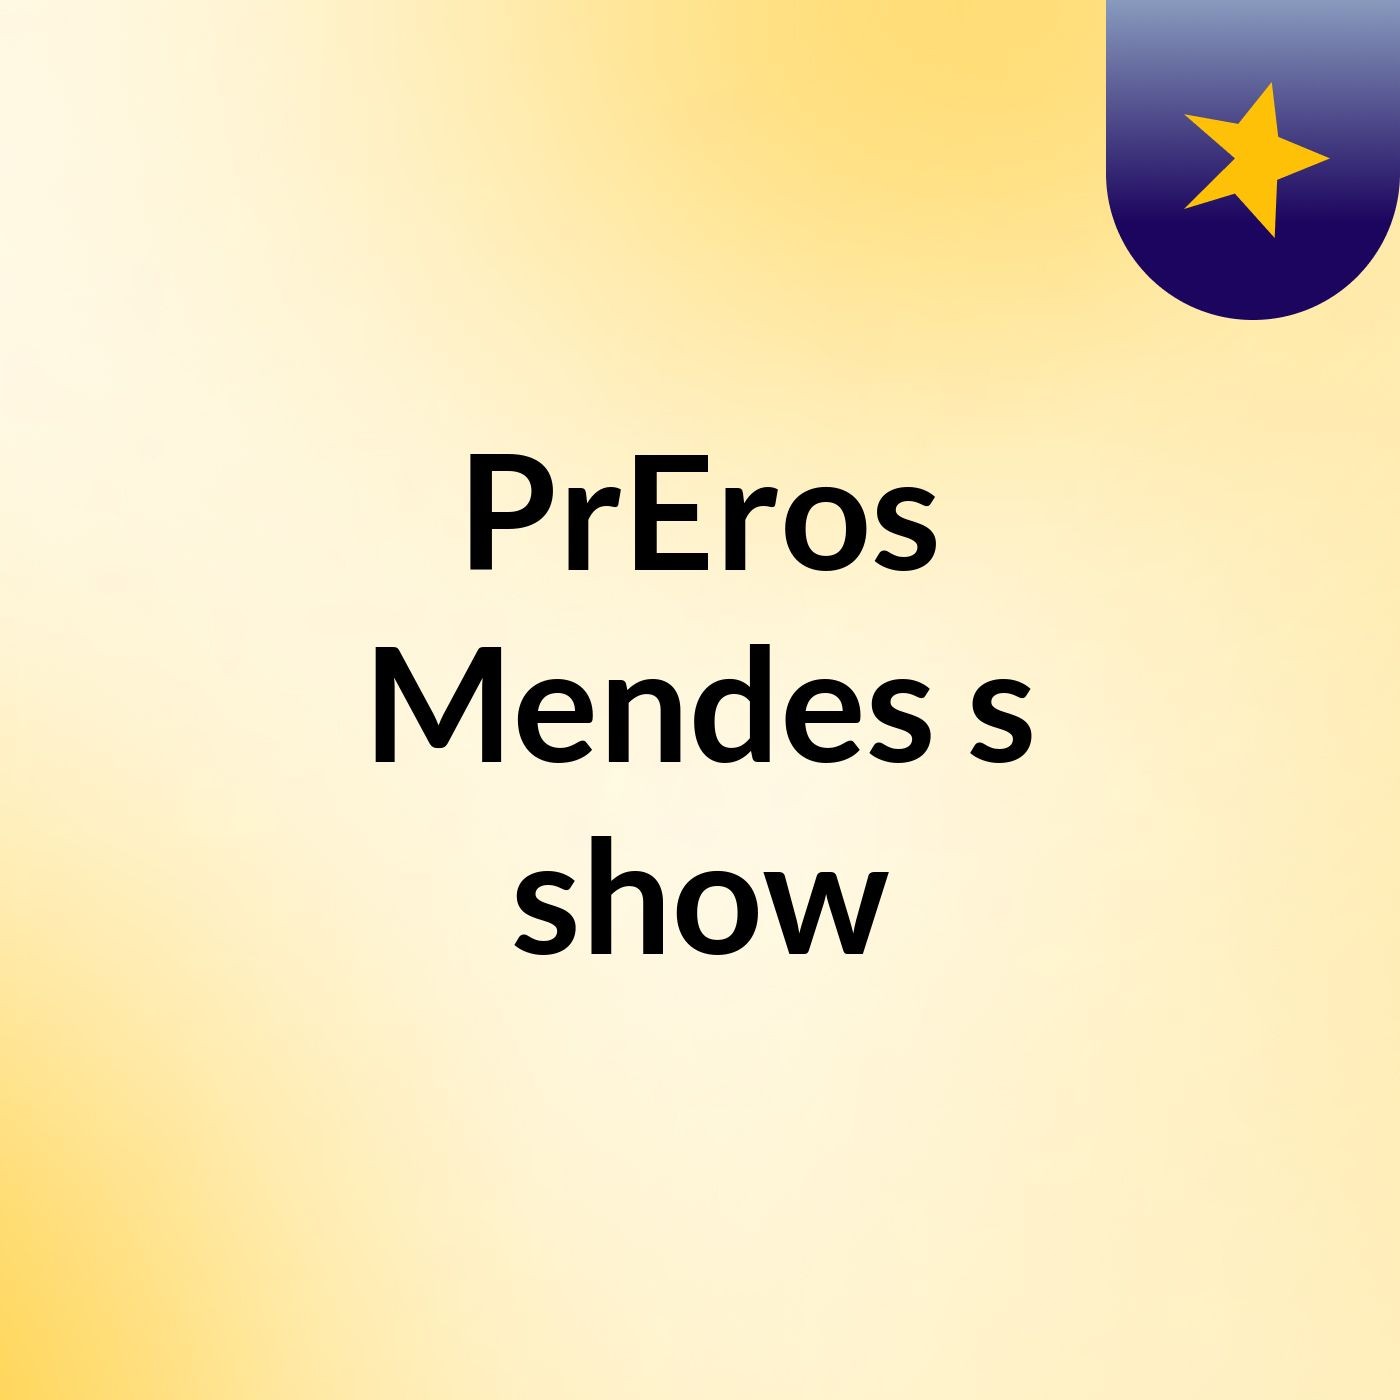 PrEros Mendes's show